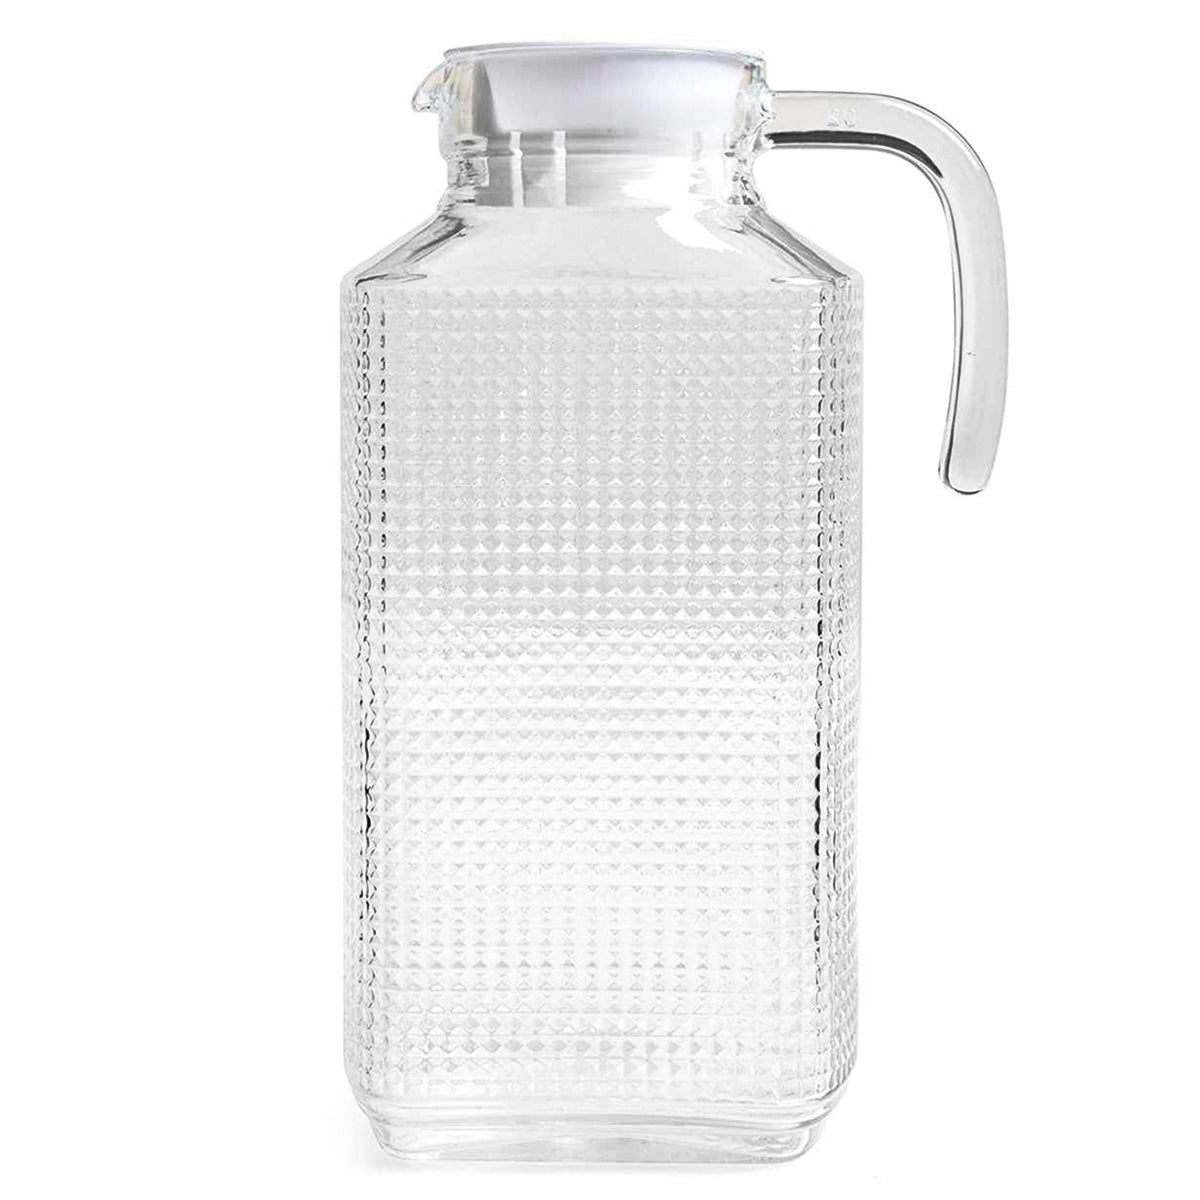 Cómo usar una jarra de vidrio templado para calentar agua 